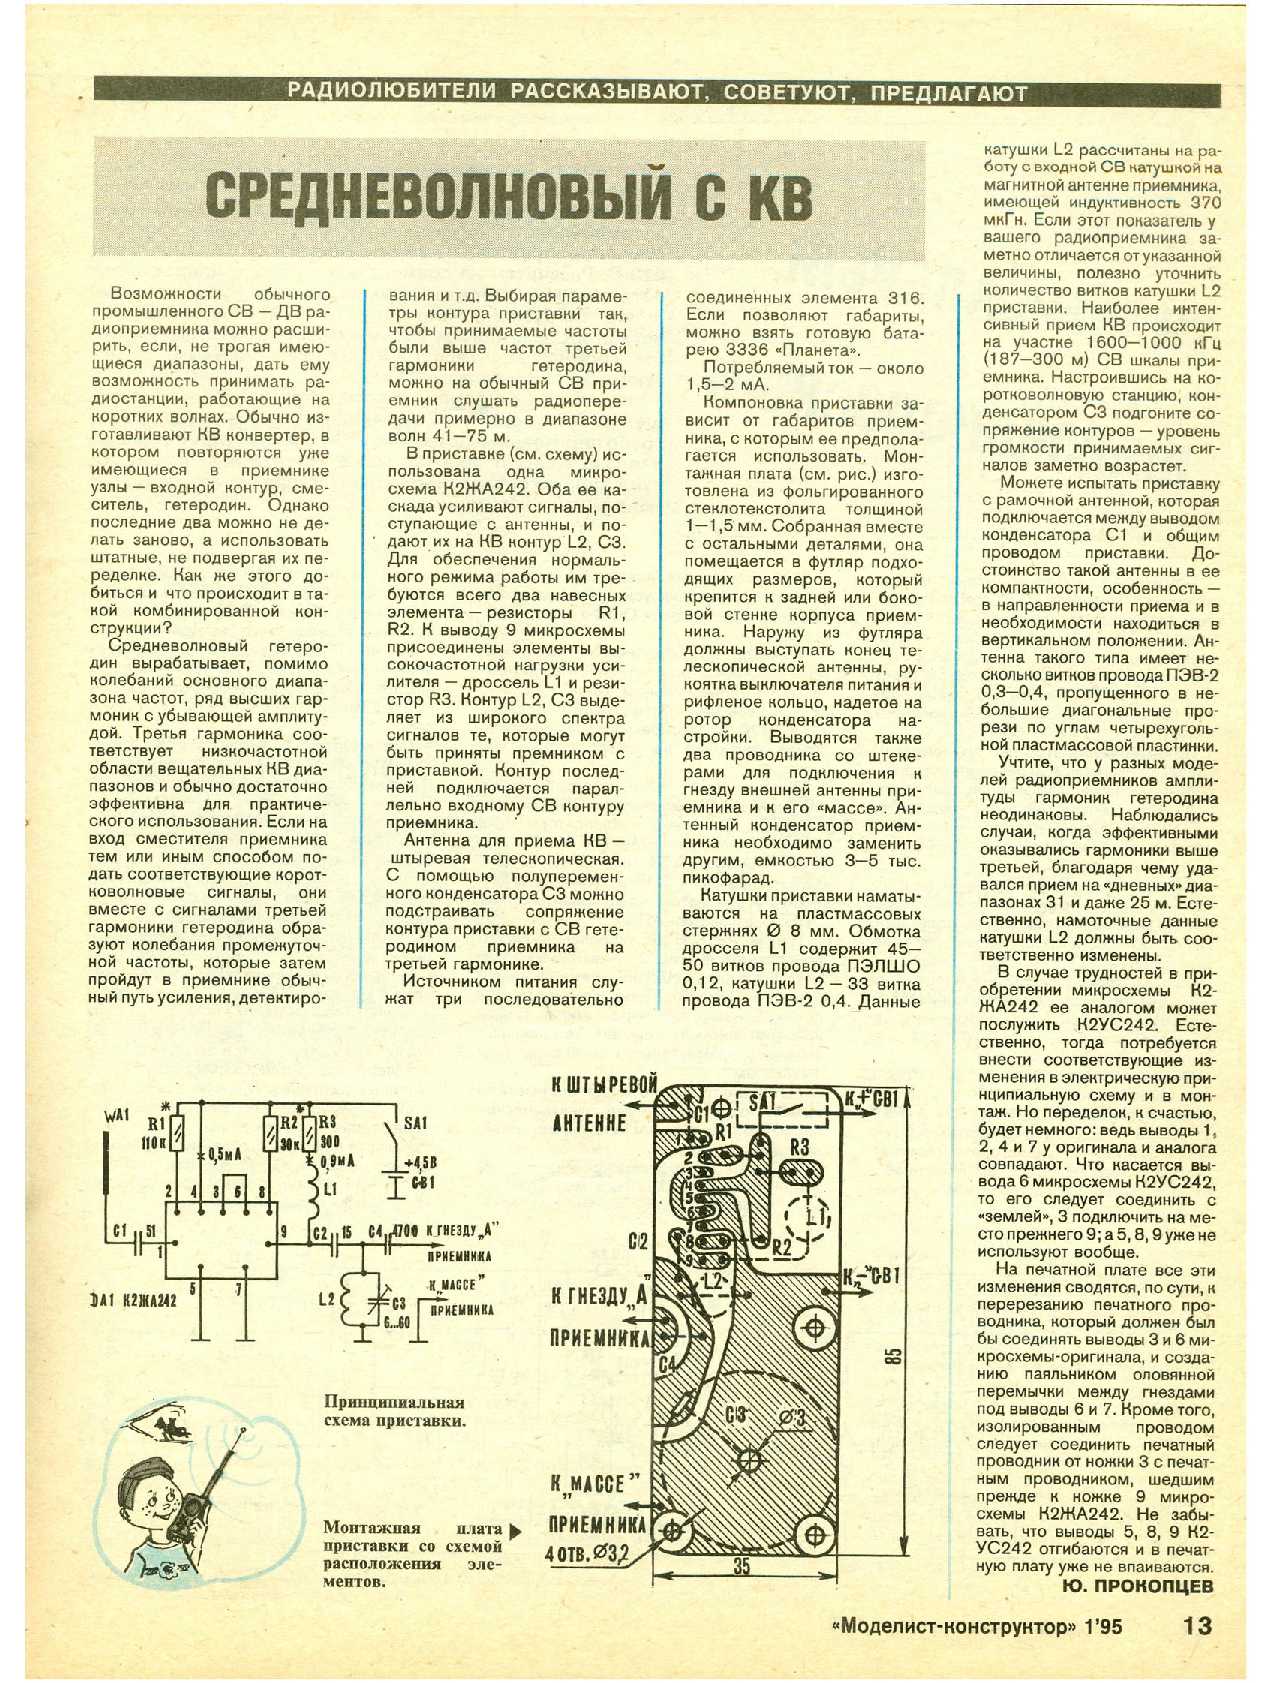 МК 1, 1995, 13 c.